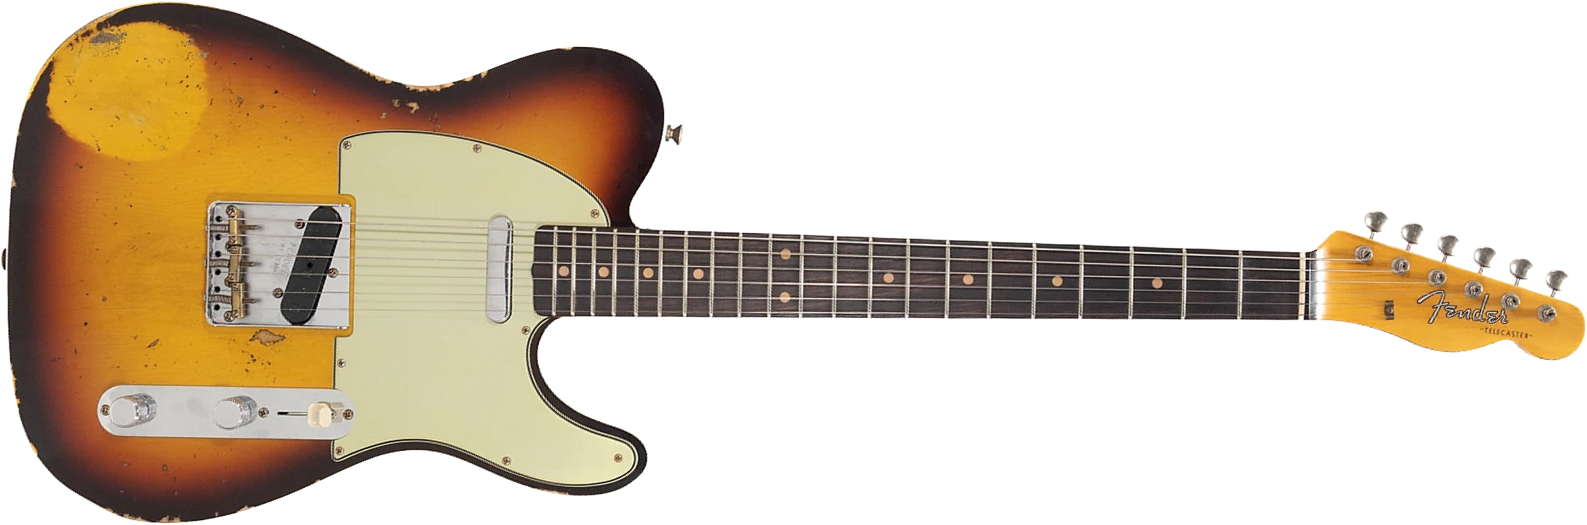 Fender Custom Shop Tele 1960 2s Ht Rw - Heavy Relic Chocolate 3-color Sunburst - Guitare Électrique Forme Tel - Main picture